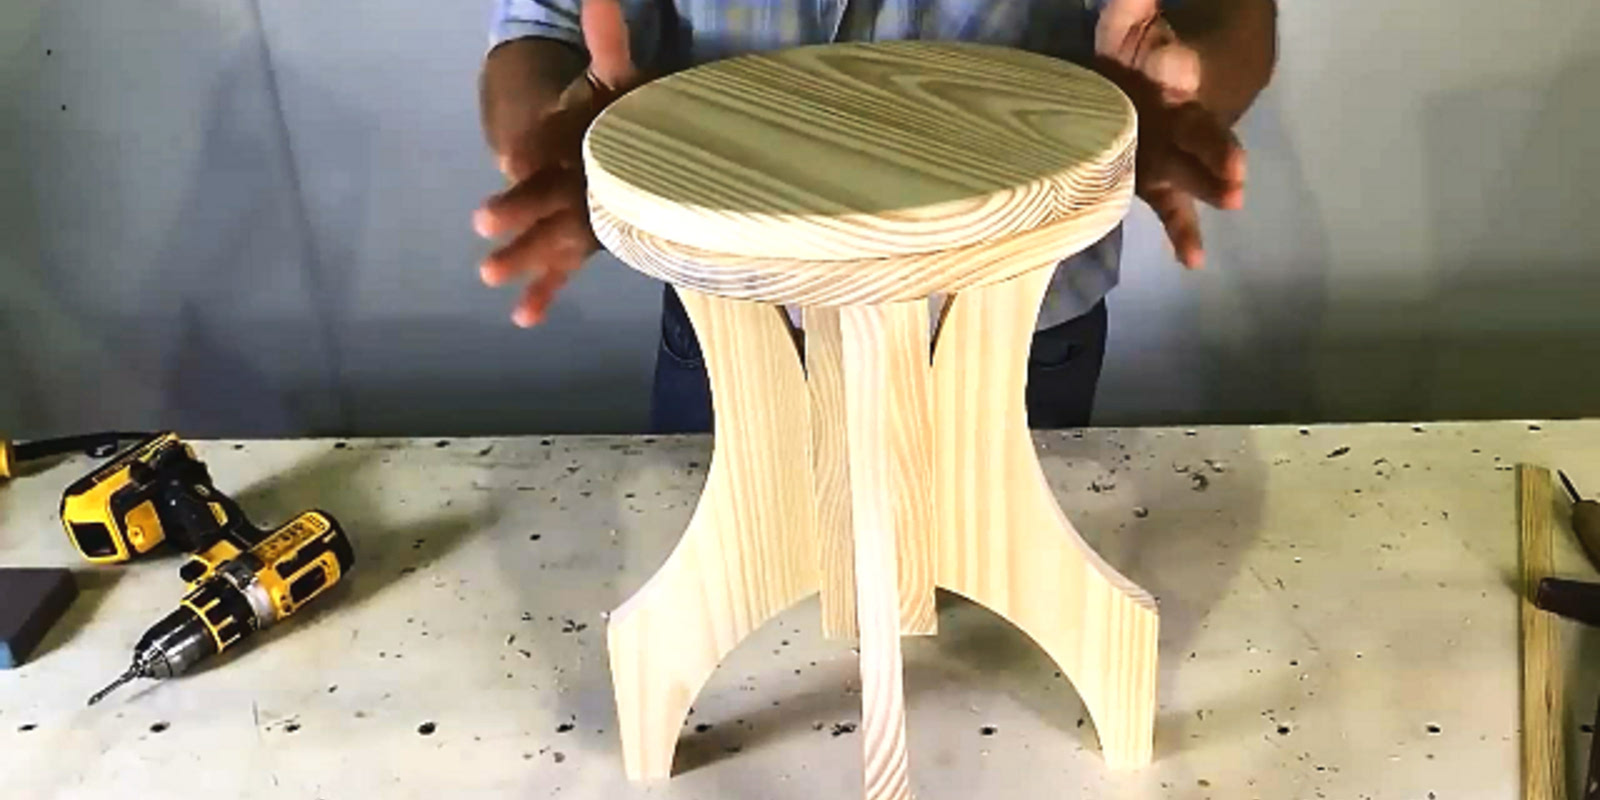 用木板制作椅子过程,自己动手做的质量真好!